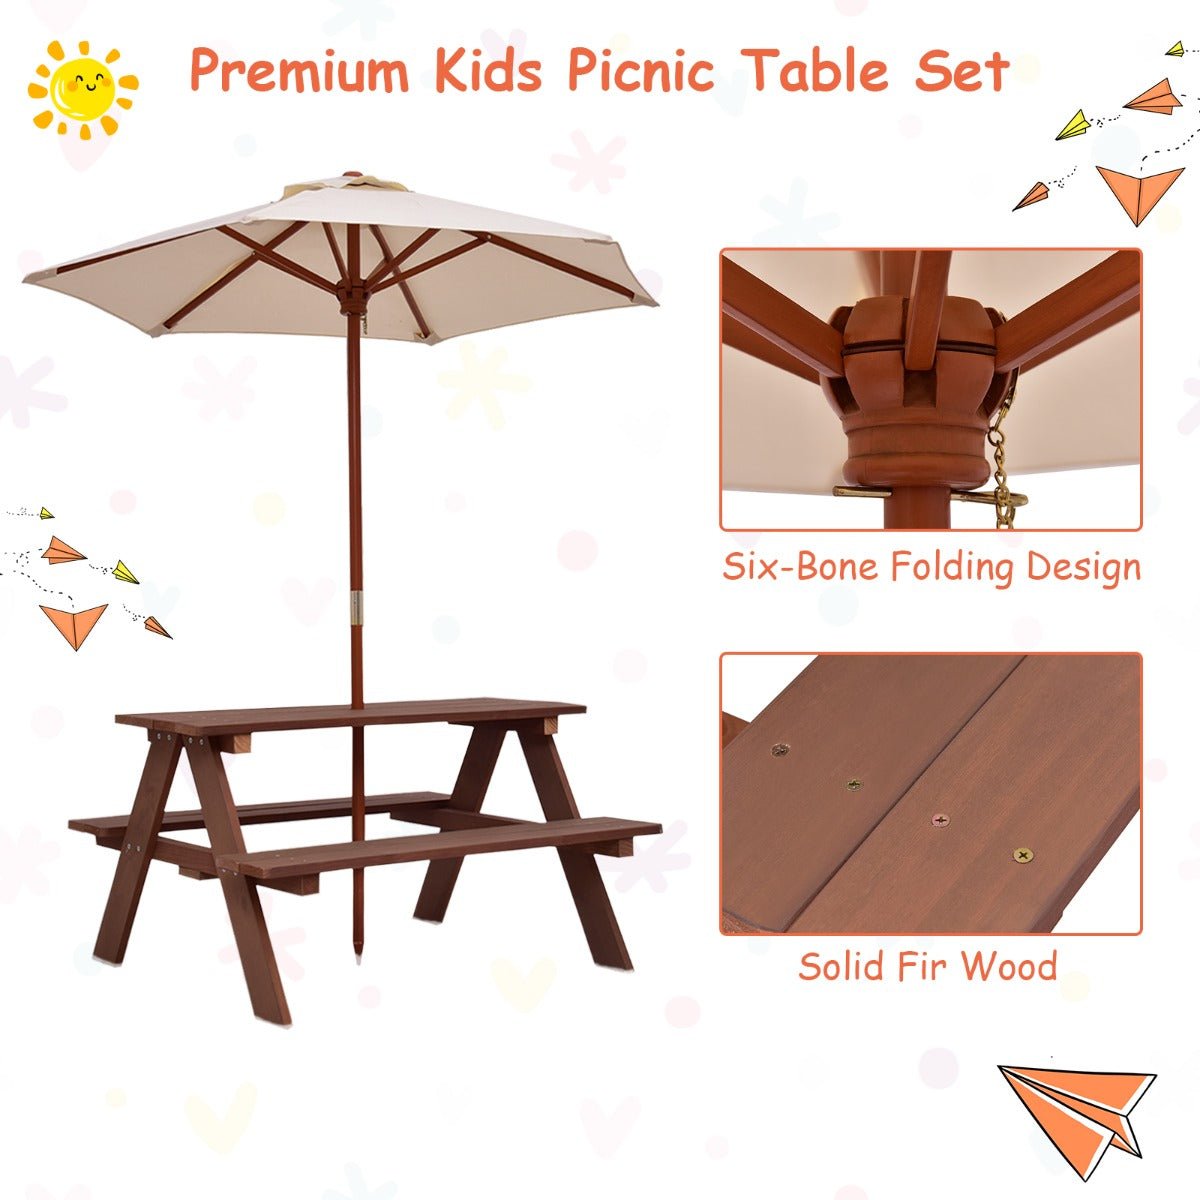 Children's Picnic Extravaganza: 3-in-1 Table, Bench & Umbrella - Outdoor Joy